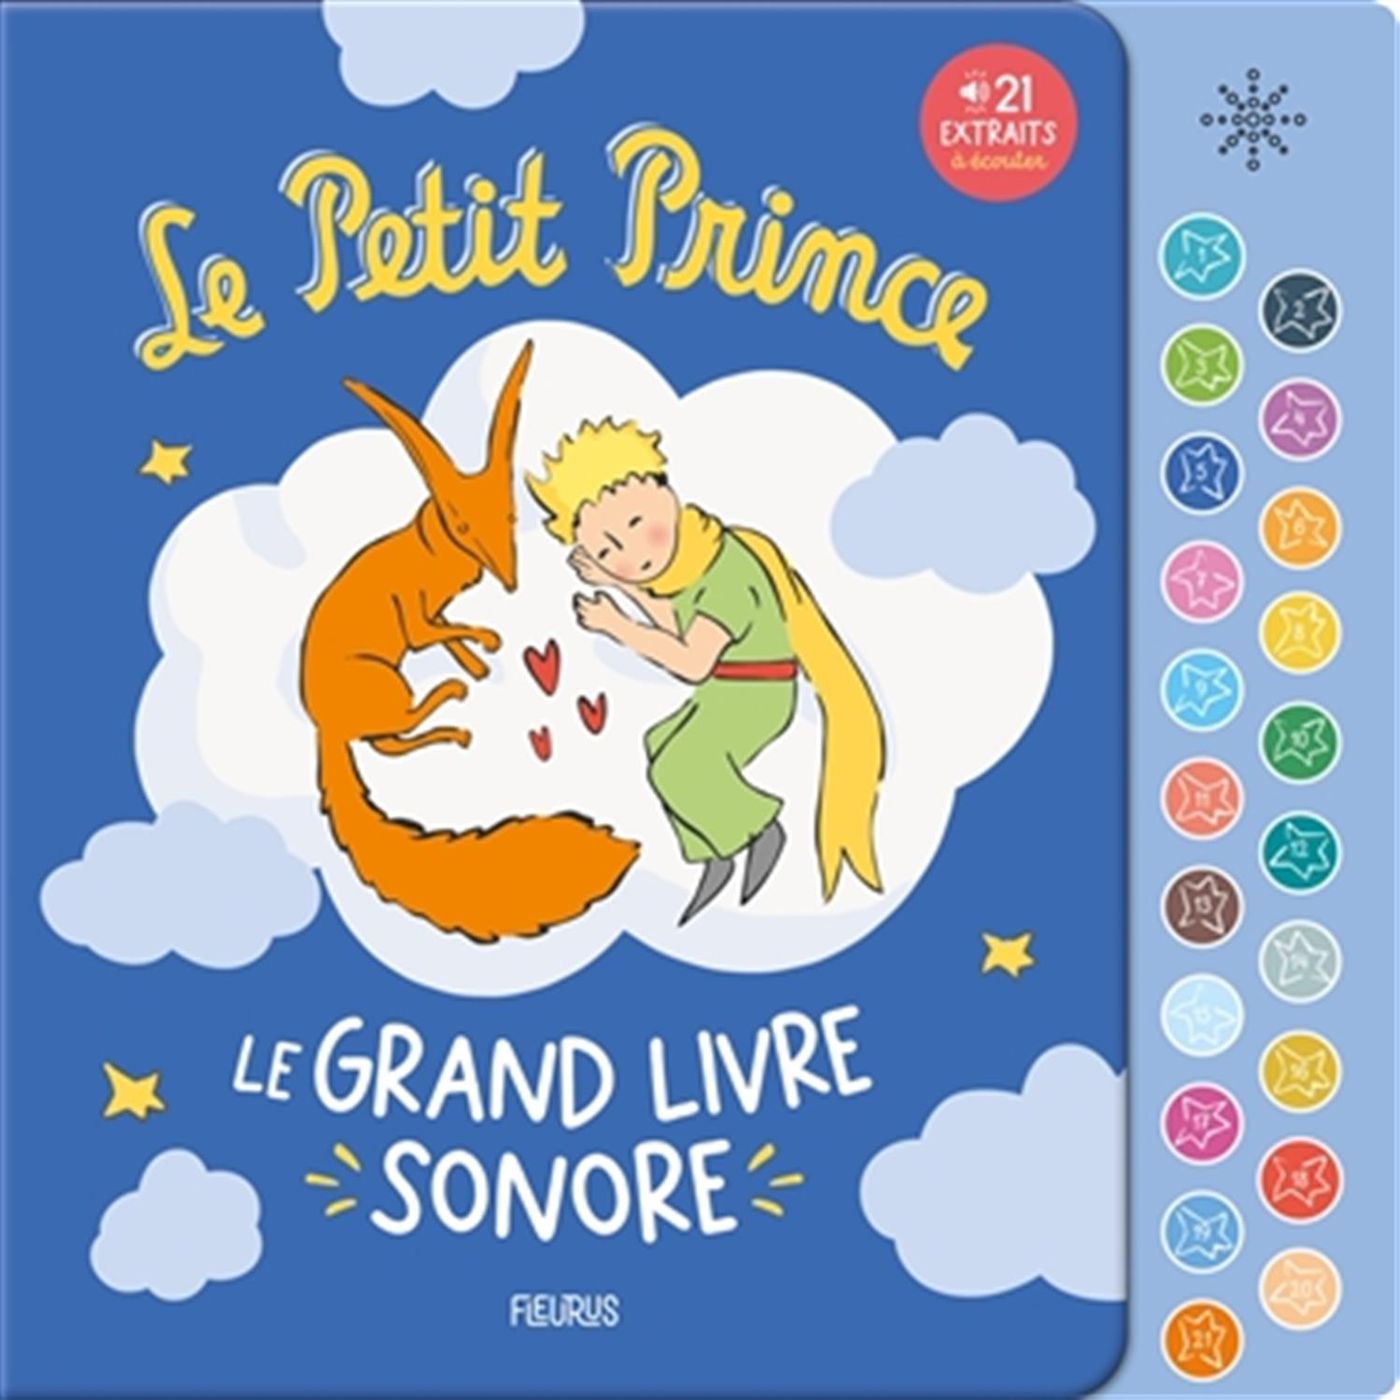 Le Petit Prince - Le grand livre sonore | Distribution Prologue